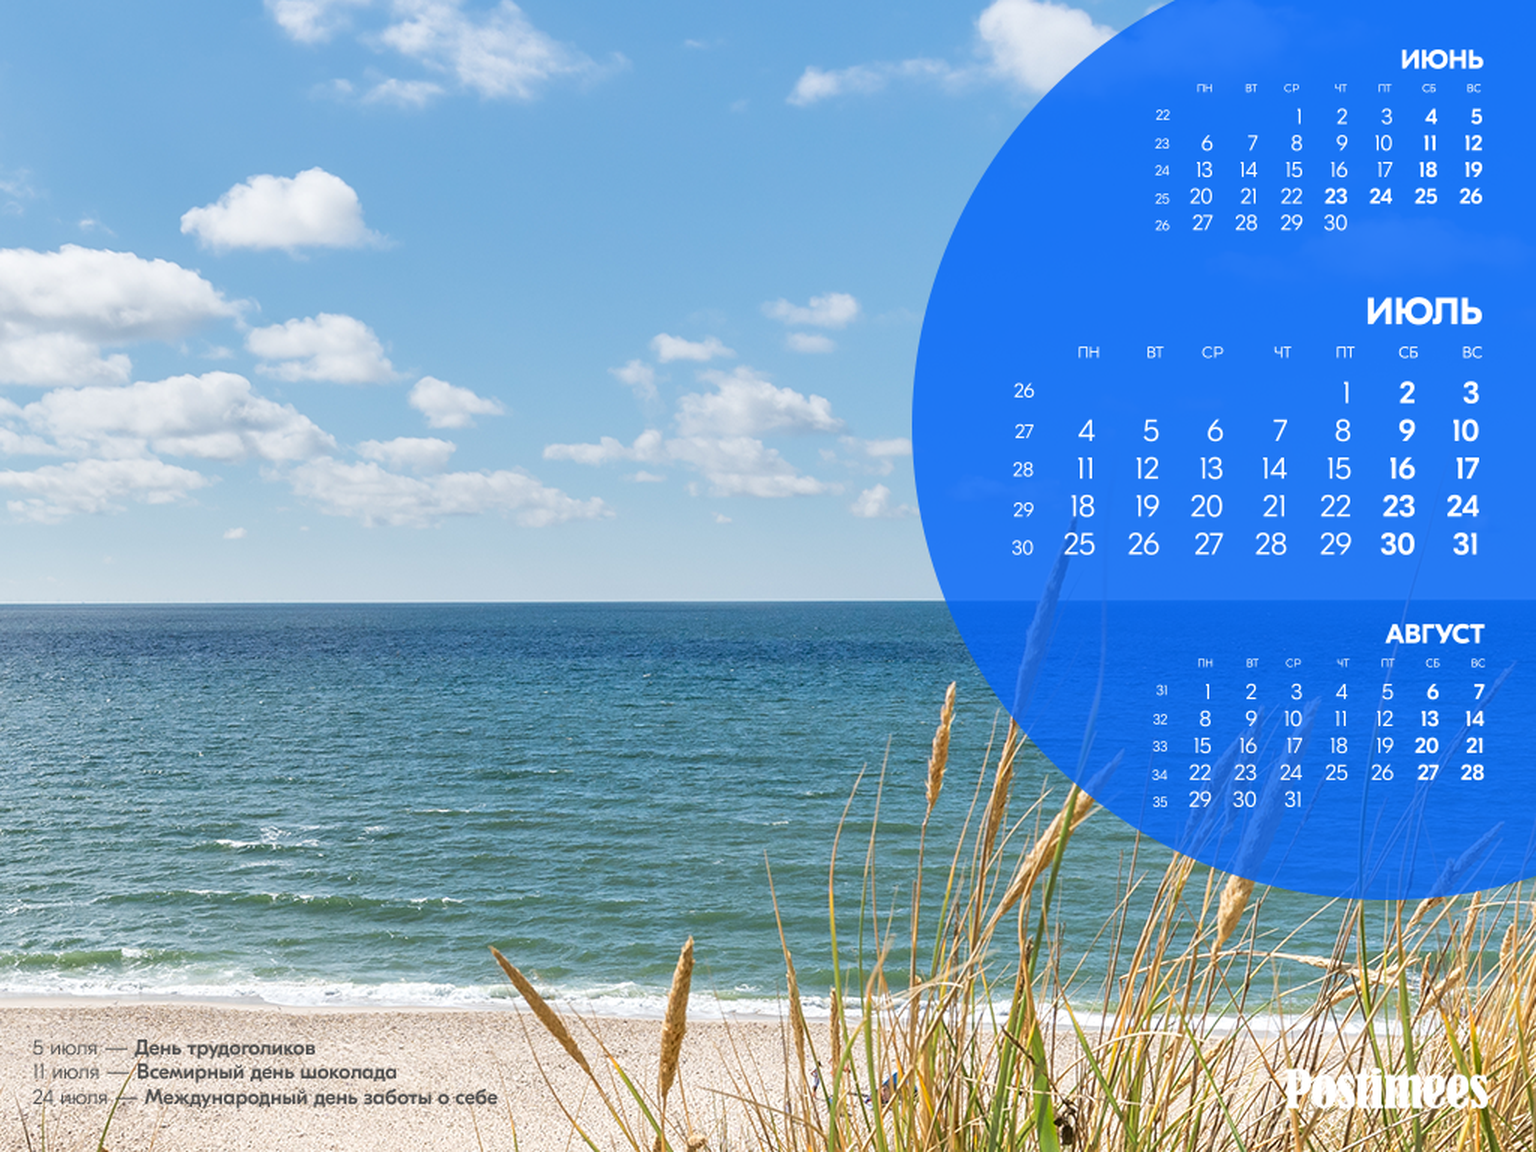 Обои-календарь на июль (1024*768).